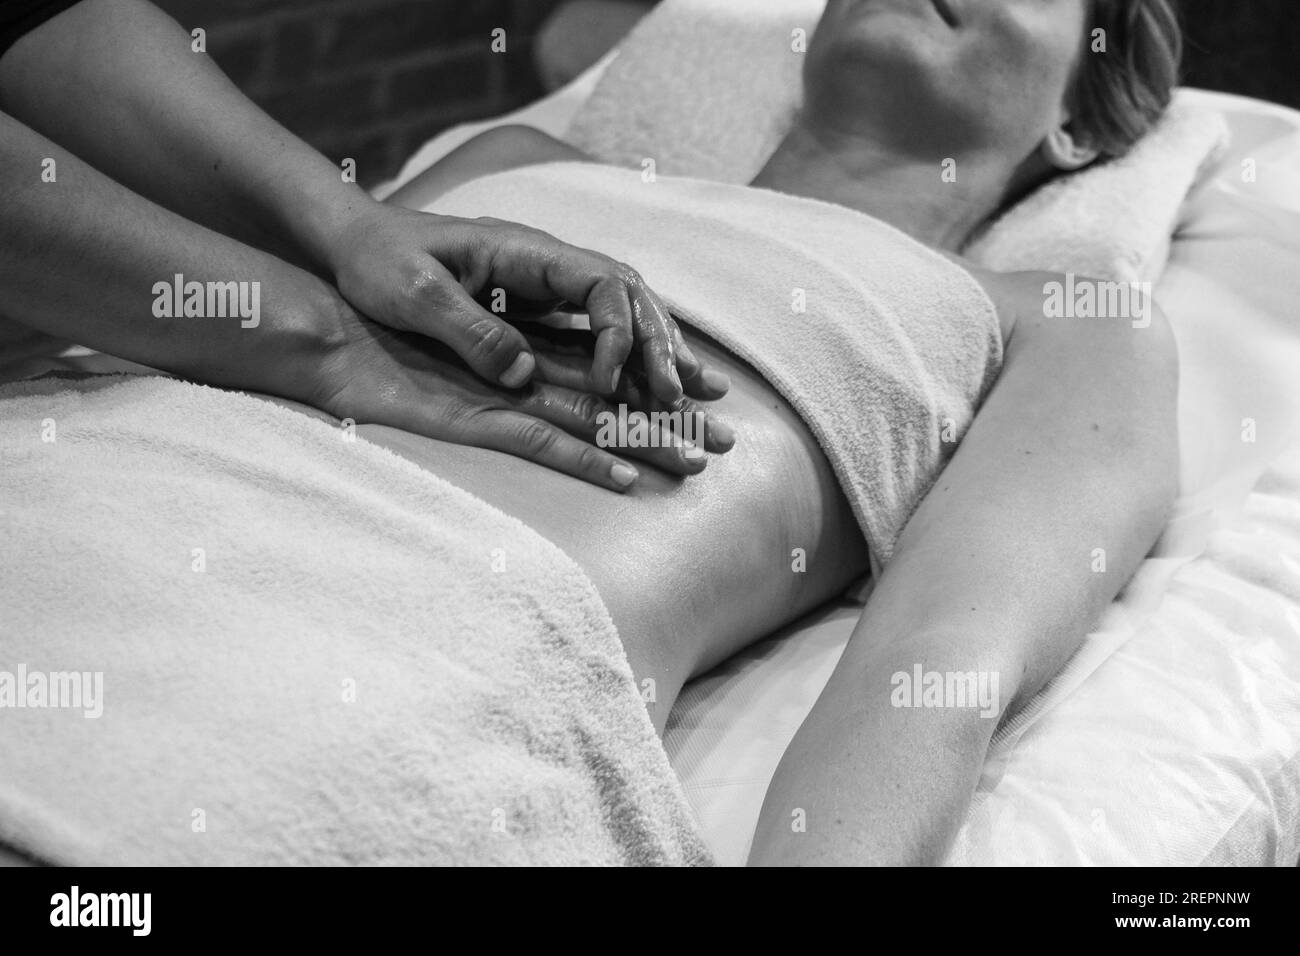 Cierre las manos del quiropráctico o masajista que hace un masaje abdominal relajante a una mujer joven en forma acostada en la cabina del spa de bienestar. Foto de stock